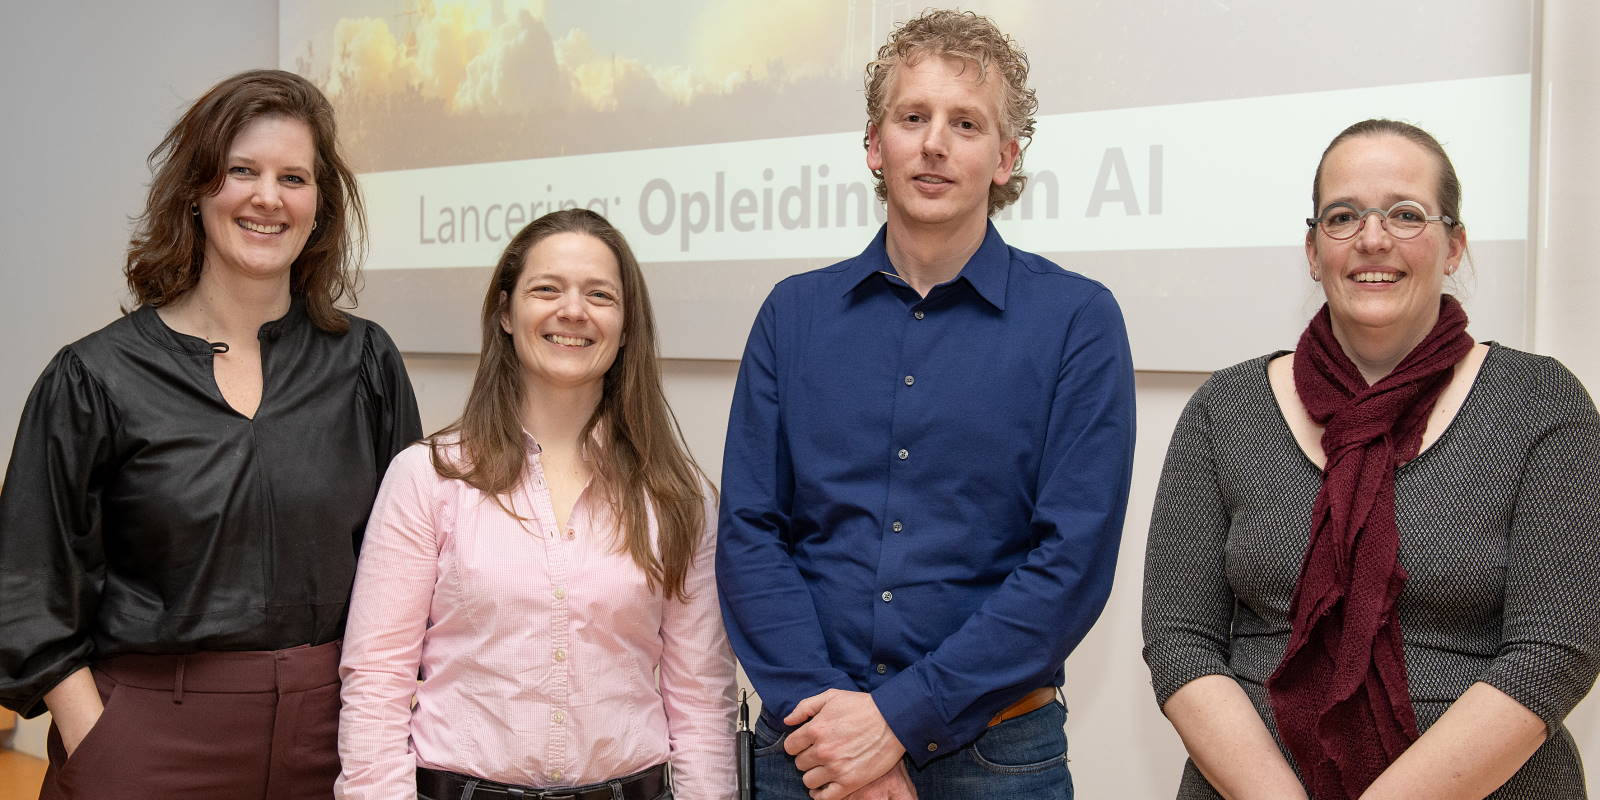 De initiatiefnemers voor het AI-opleidingsprogramma (v.l.n.r.): Ellen Geerts (JADS), Jessica Workum (ETZ), Paul van Leest (ETZ) en Danielle Sent (JADS). Foto: ETZ/Maria van der Heyden